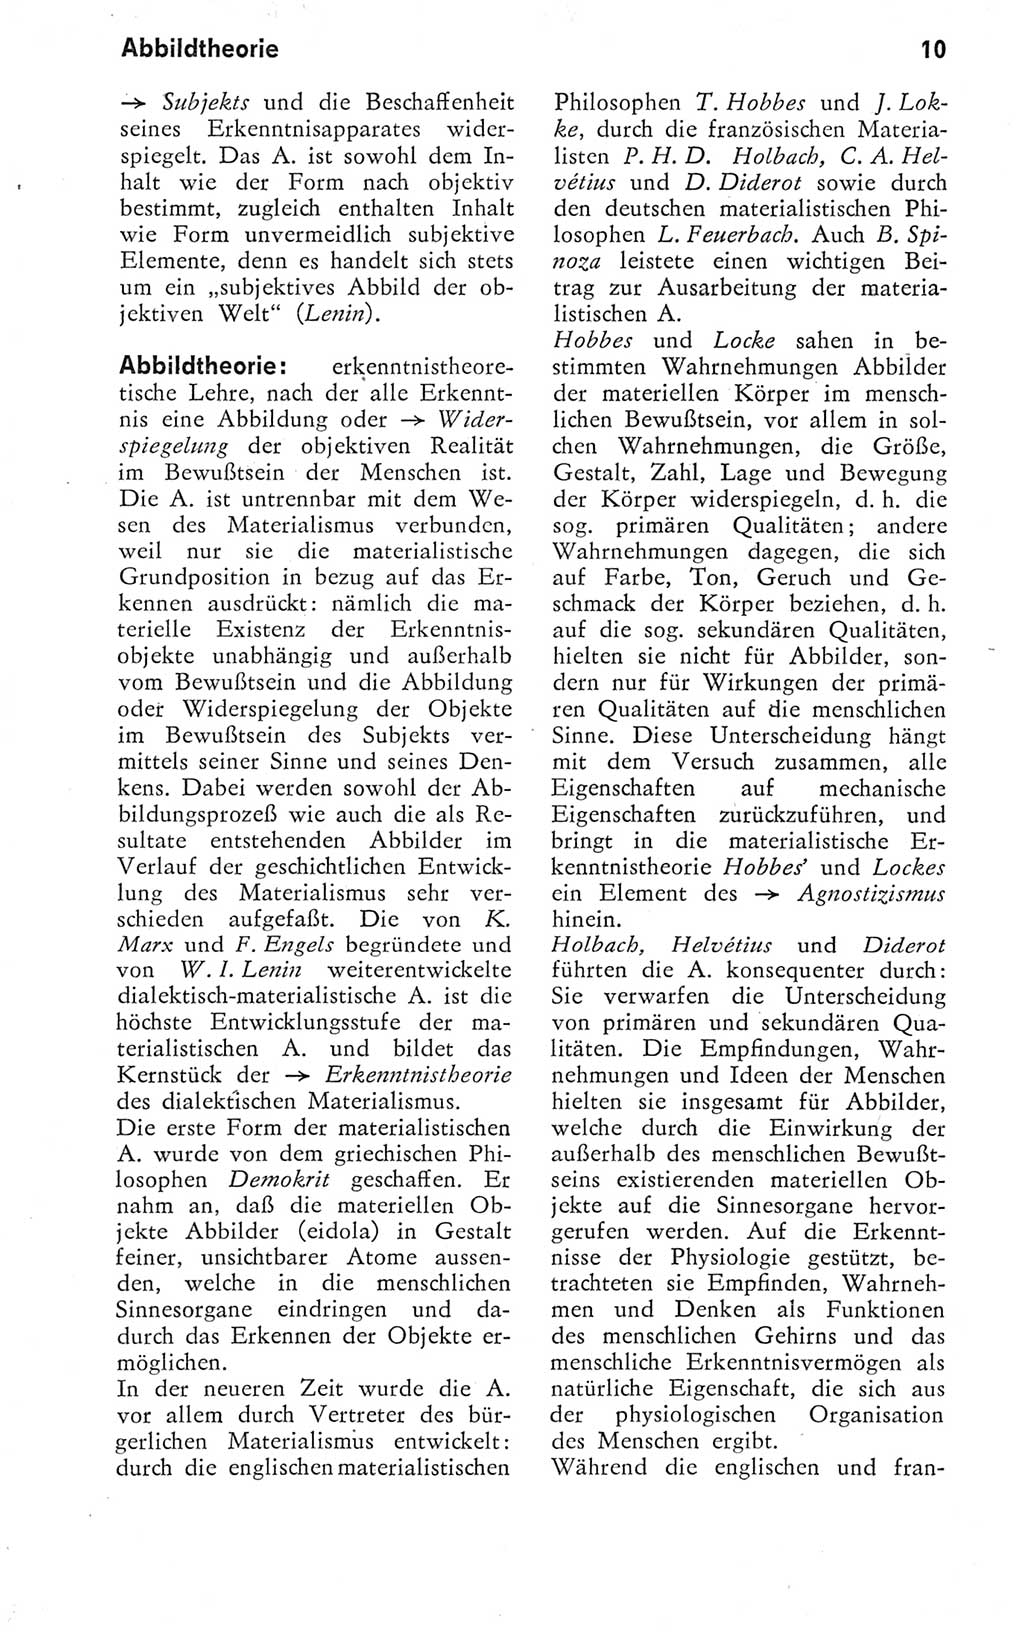 Kleines Wörterbuch der marxistisch-leninistischen Philosophie [Deutsche Demokratische Republik (DDR)] 1974, Seite 10 (Kl. Wb. ML Phil. DDR 1974, S. 10)